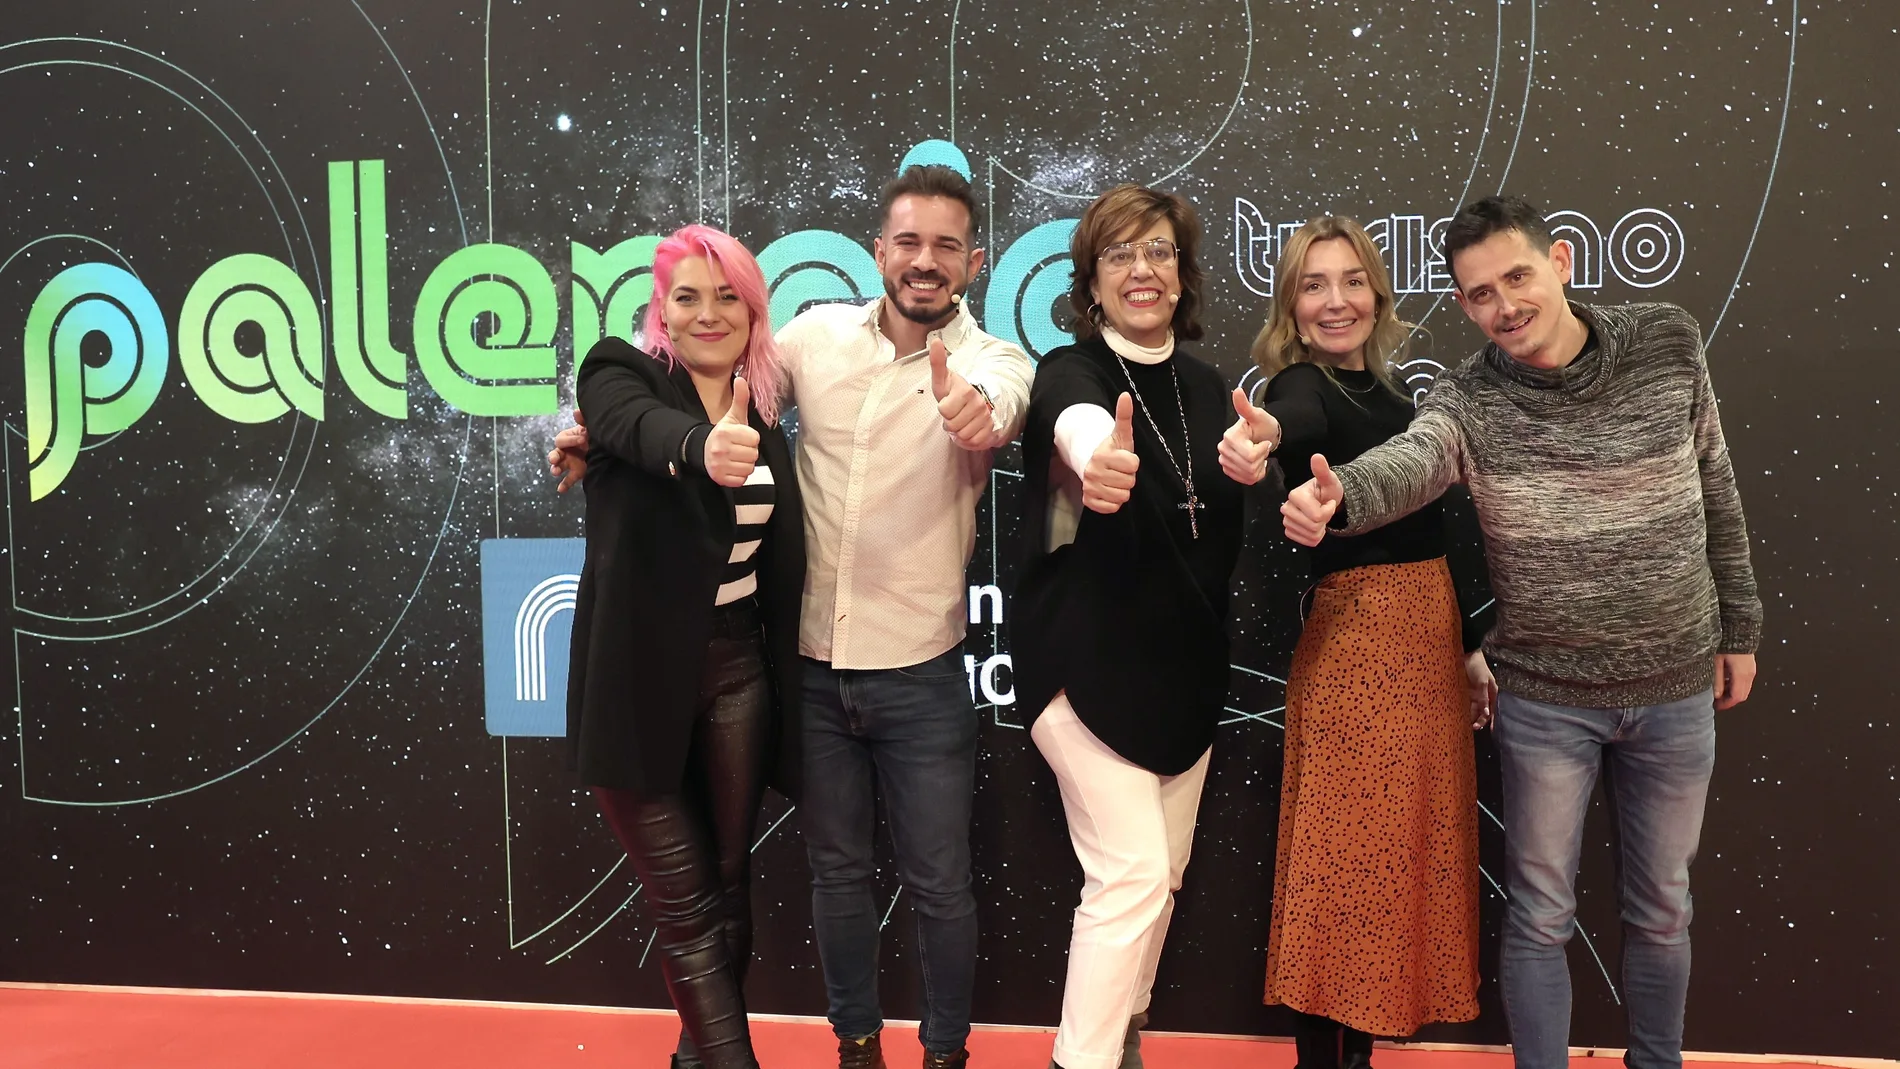 La presidenta de la Diputación de Palencia, Ángeles Armisén, con los cuatro influencers que recorrerán la provincia para promocionarla en sus redes sociales